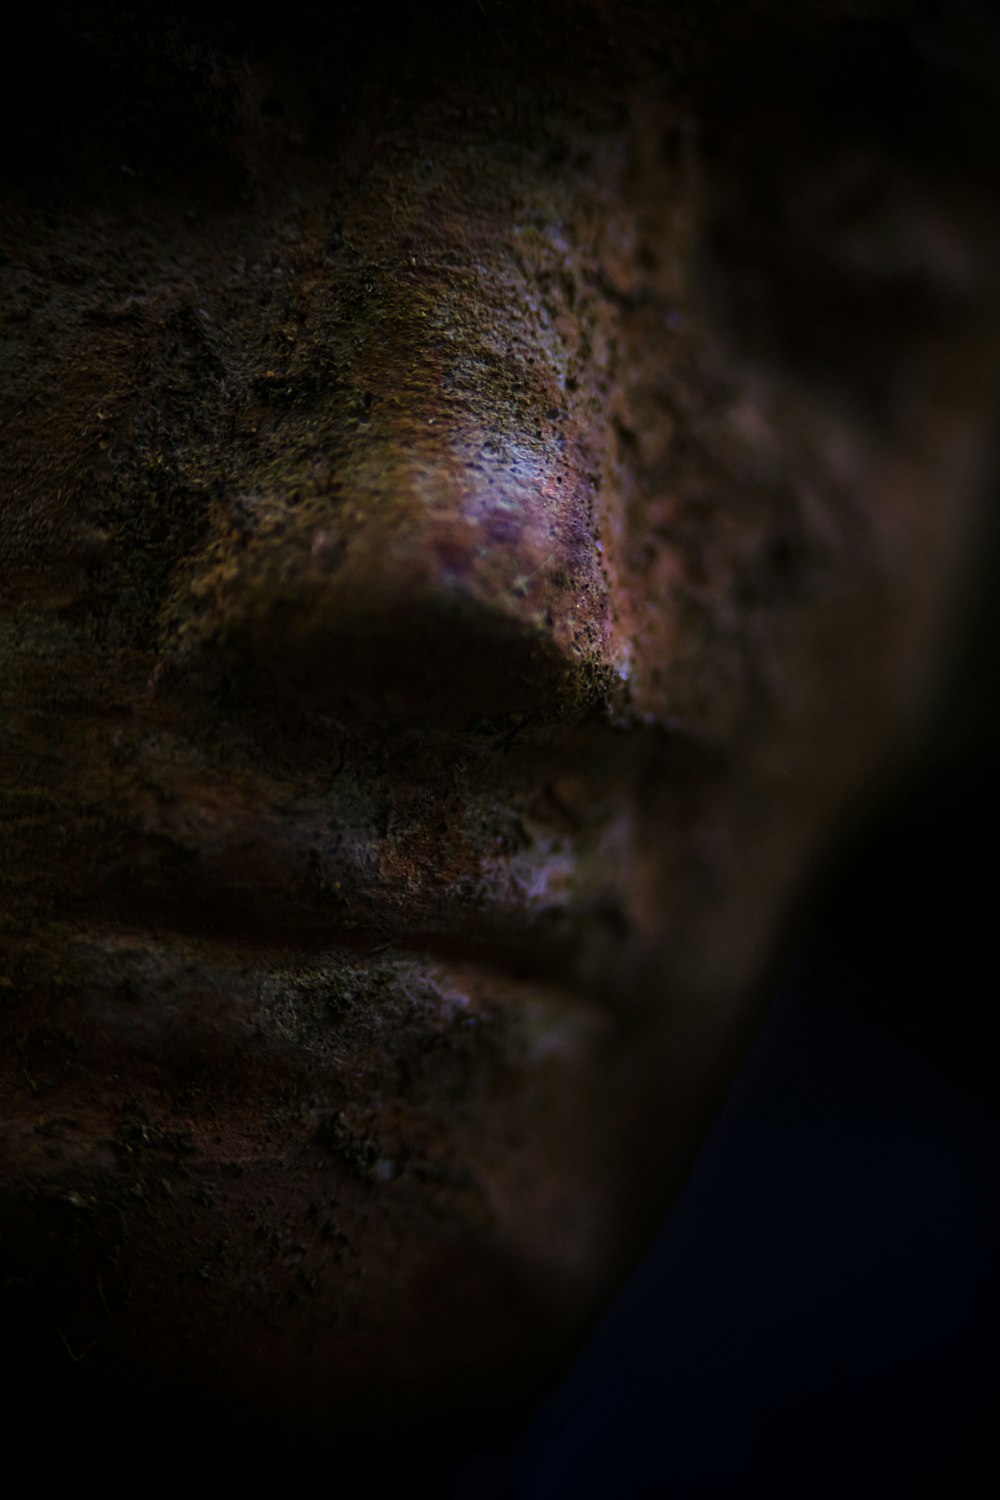 human face sculpture in closeup photo